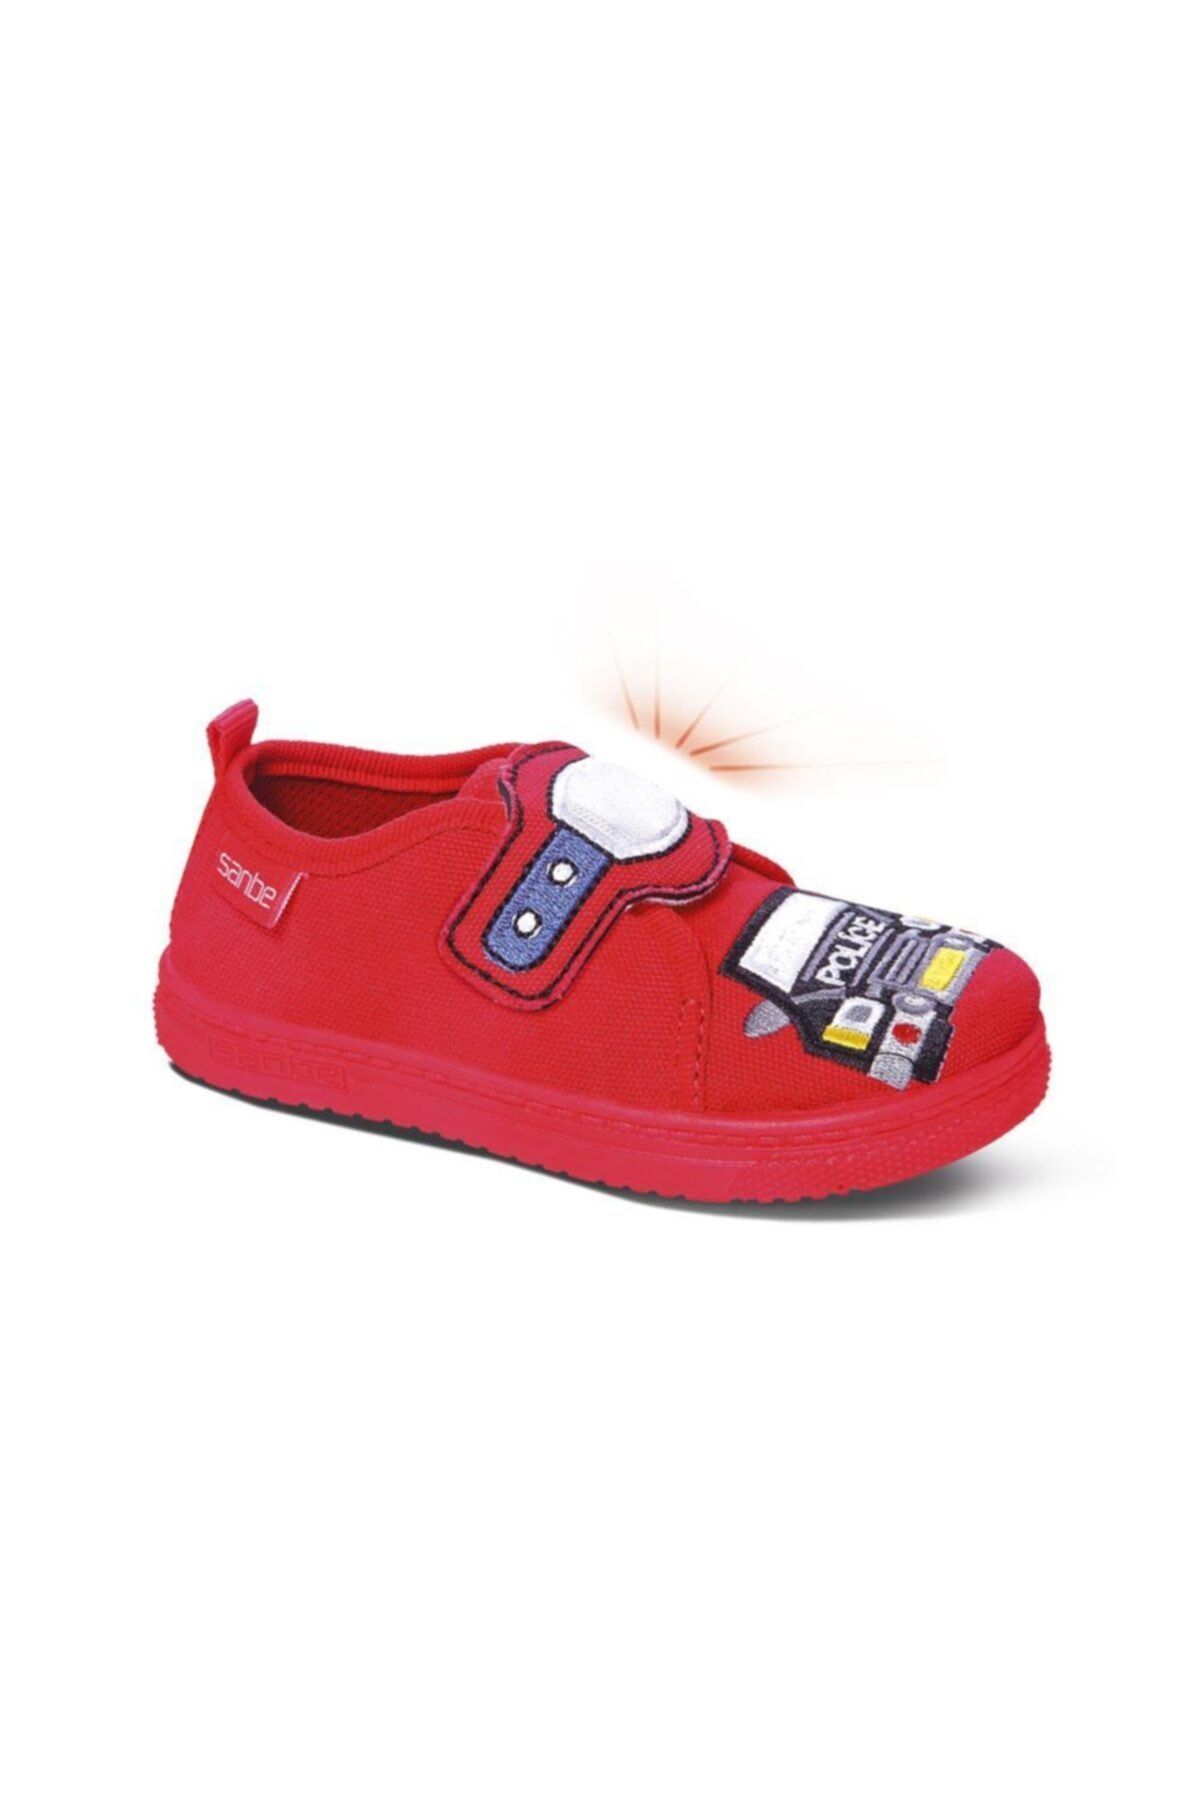 Sanbe 106 P 106 26-30 Panduf Ayakkabı Kırmızı